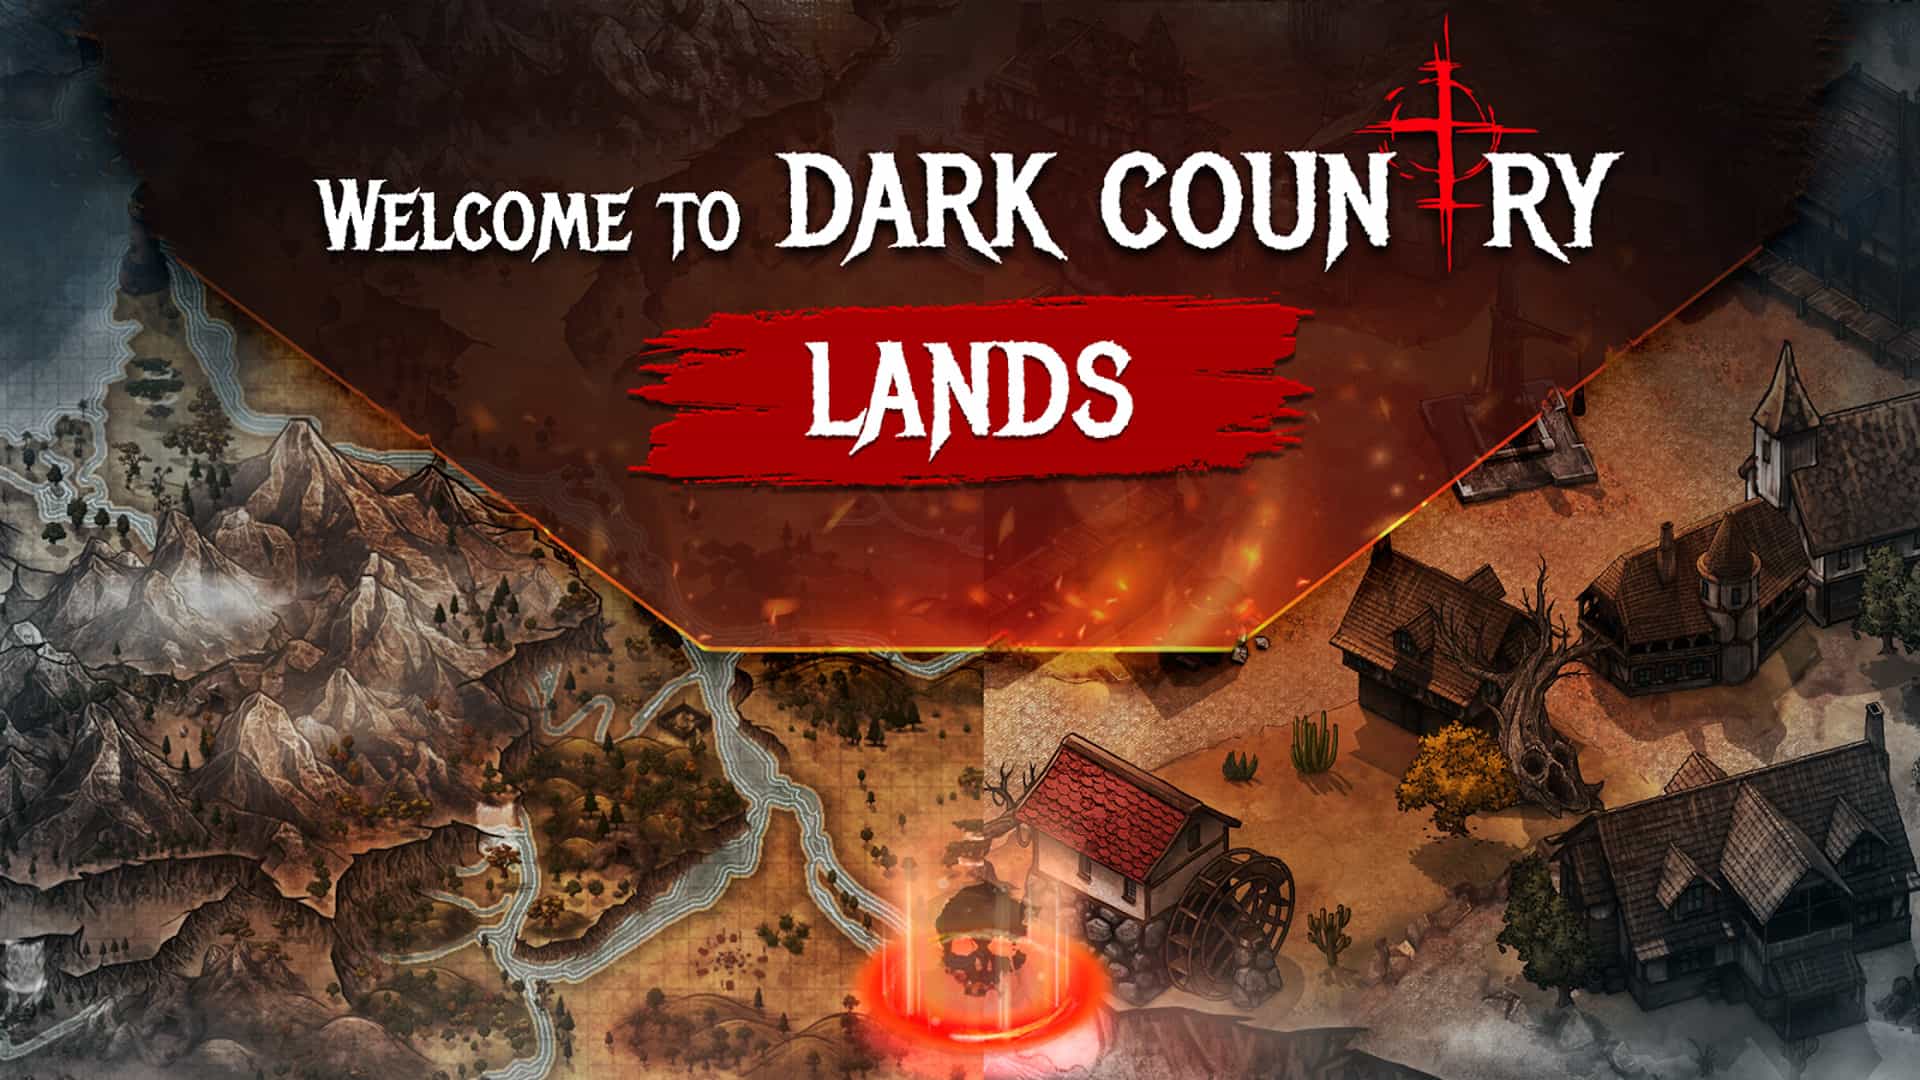 Dark Country Land Gameplay